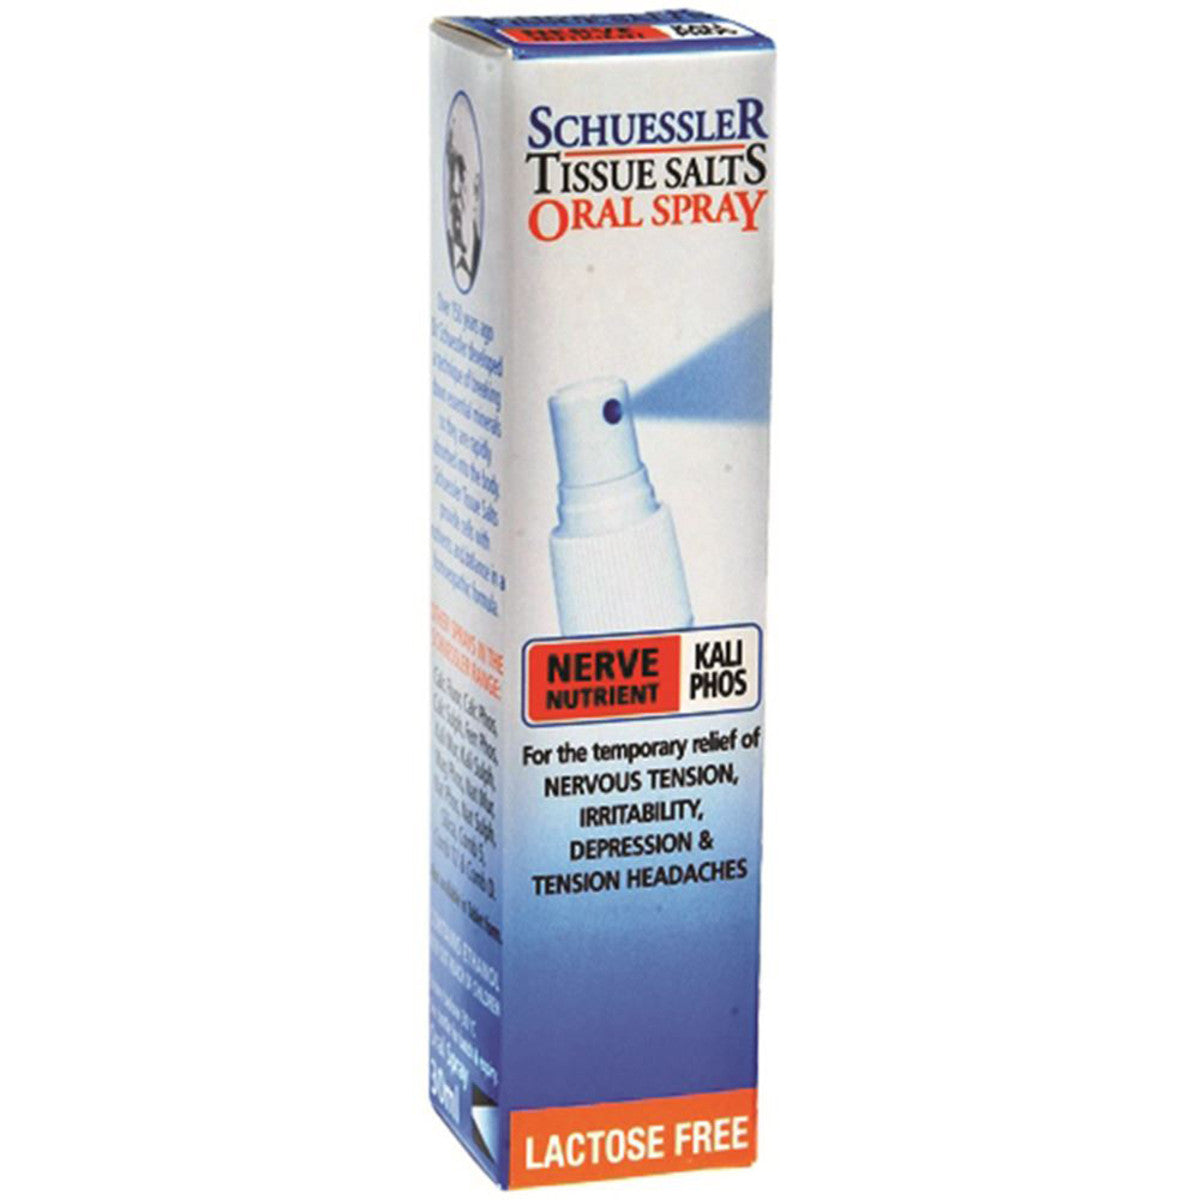 Martin & Pleasance Schuessler Tissue Salts Kali Phos 30ml Spray, Nerve Nutrient